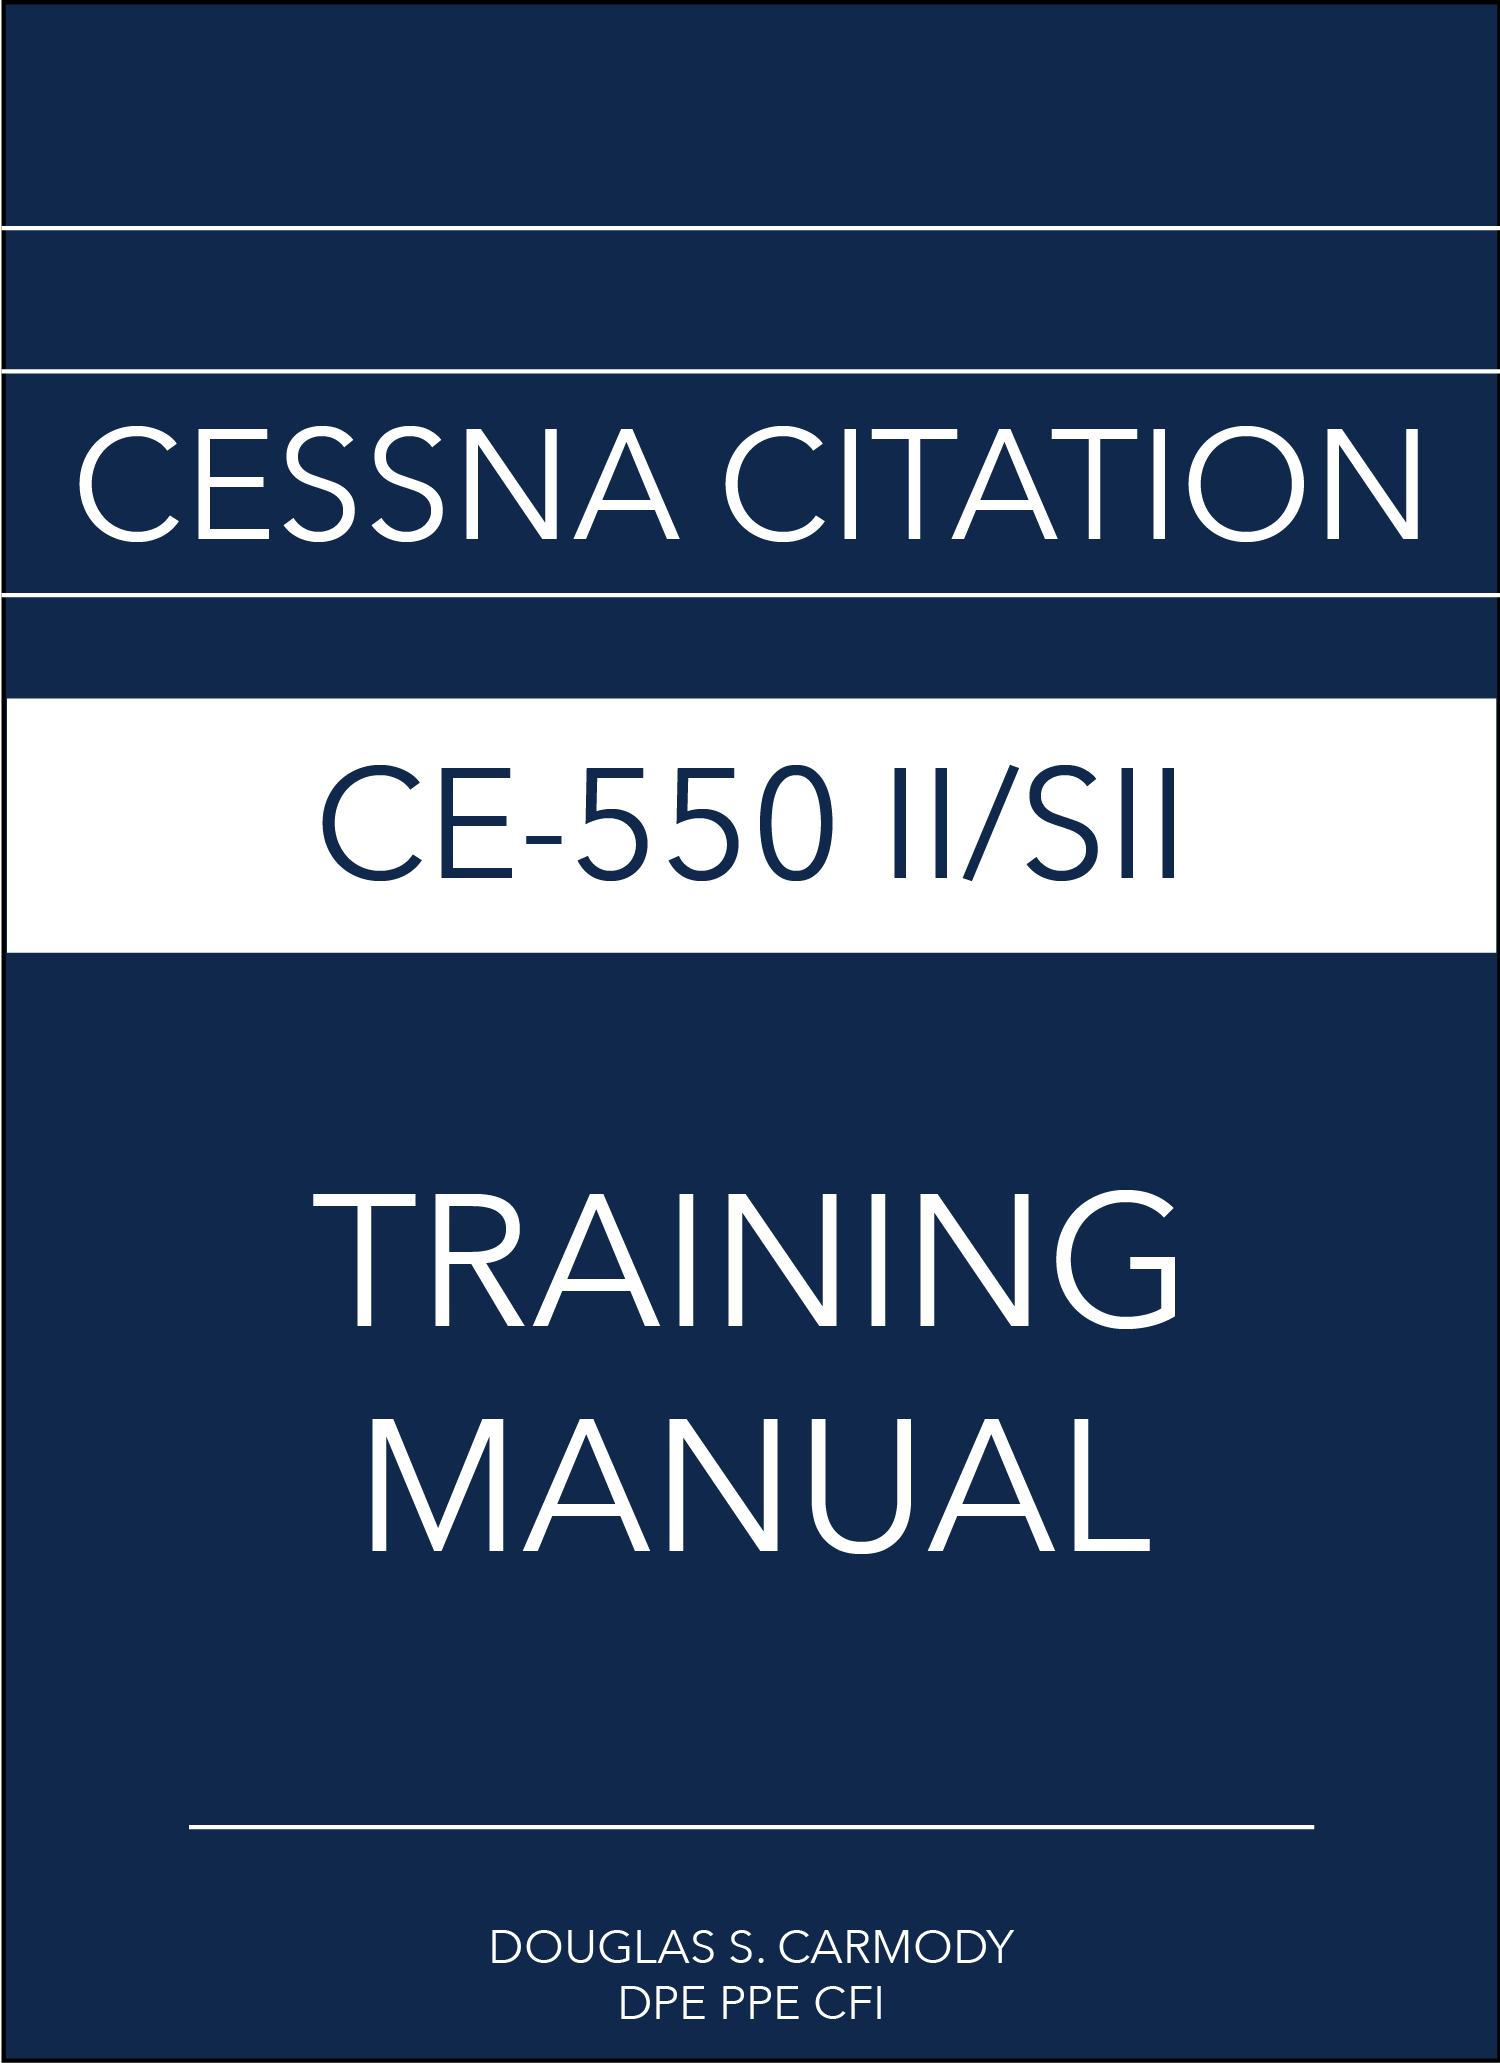 SafePilot CE-550 training manual